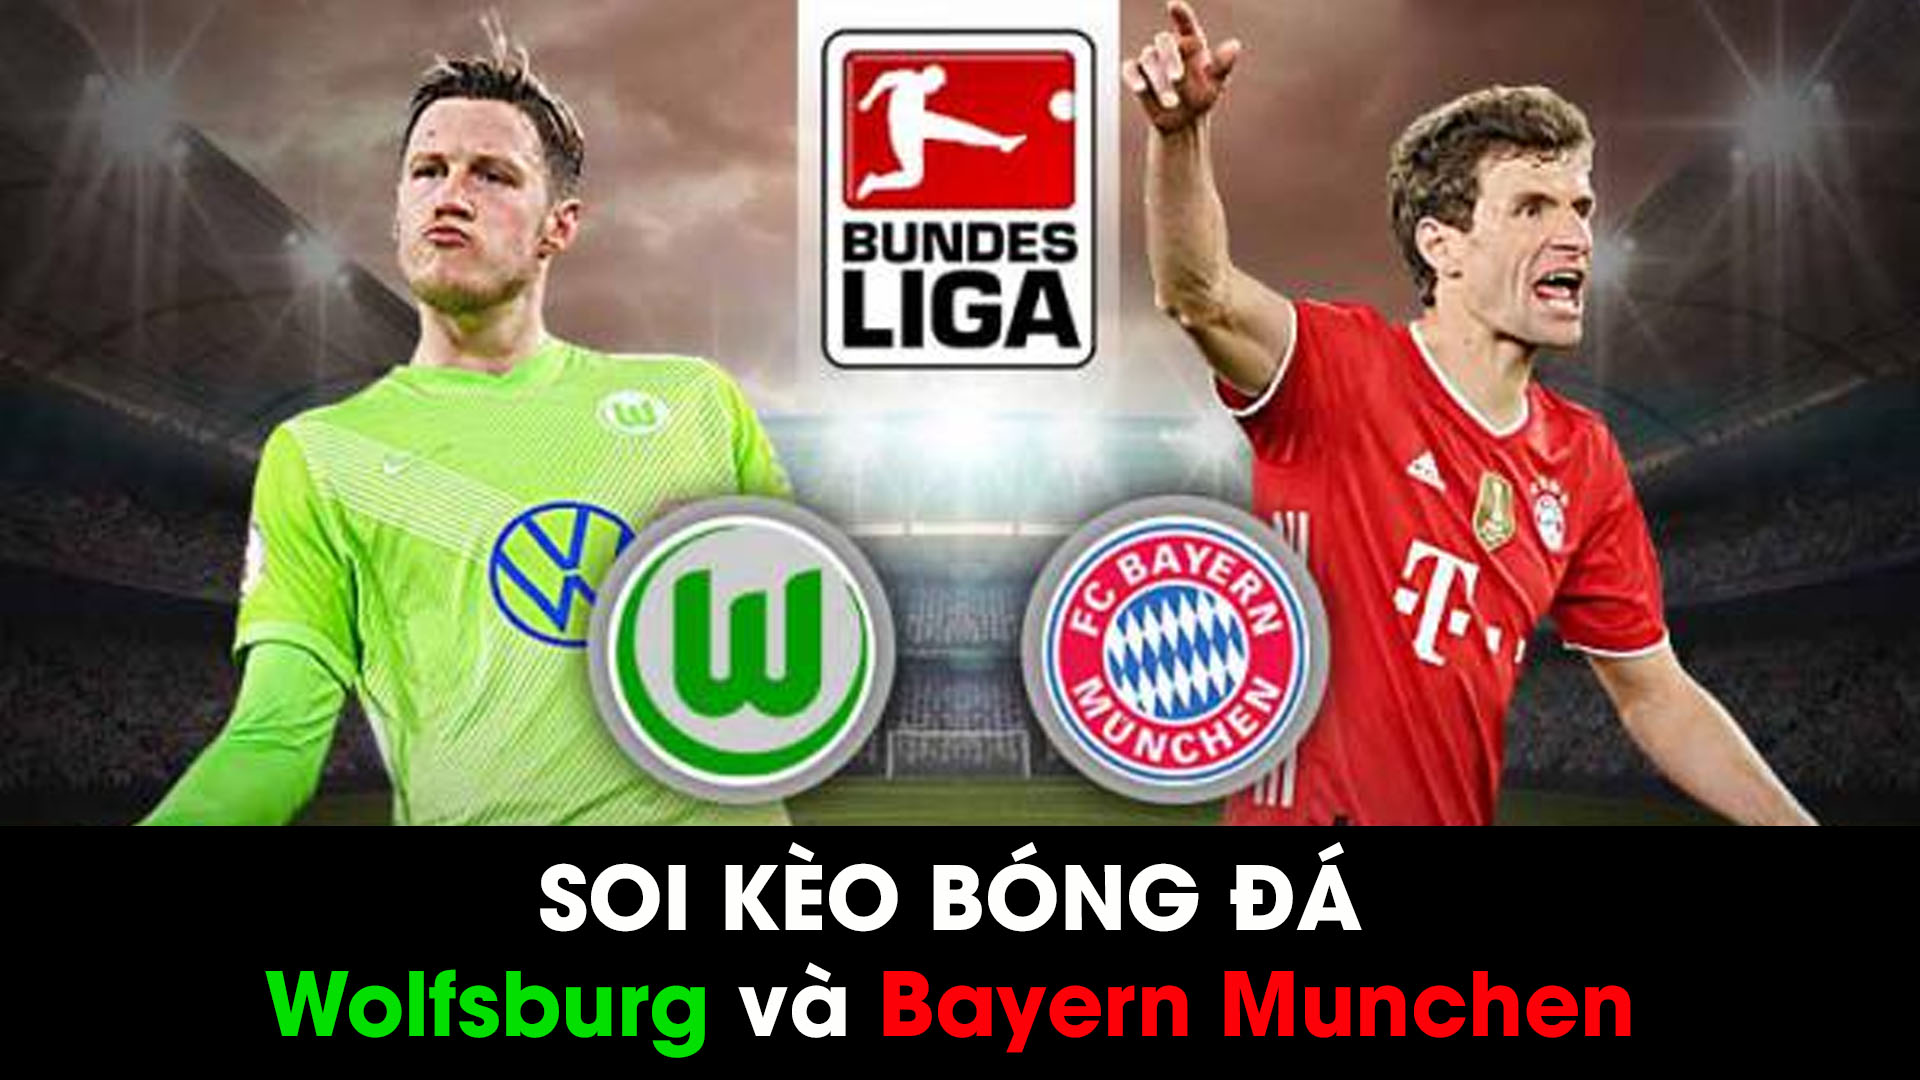 Soi kèo bóng đá giữa Bayern Munchen và Wolfsburg 01